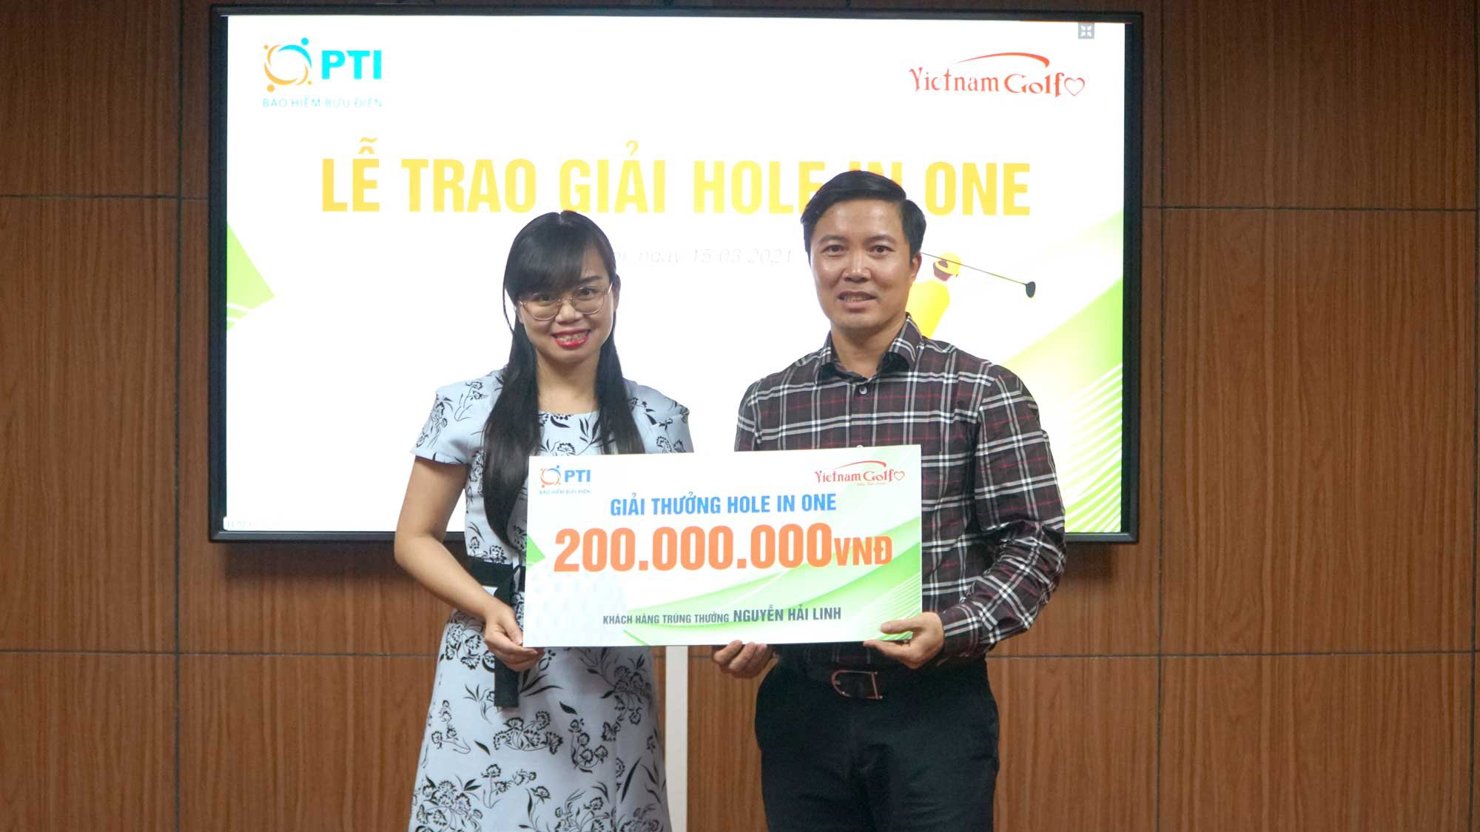 Đại diện PTI trao giải thưởng Hole in one cho golfer Nguyễn Hải Linh trị gi&aacute; 200 triệu đồng.